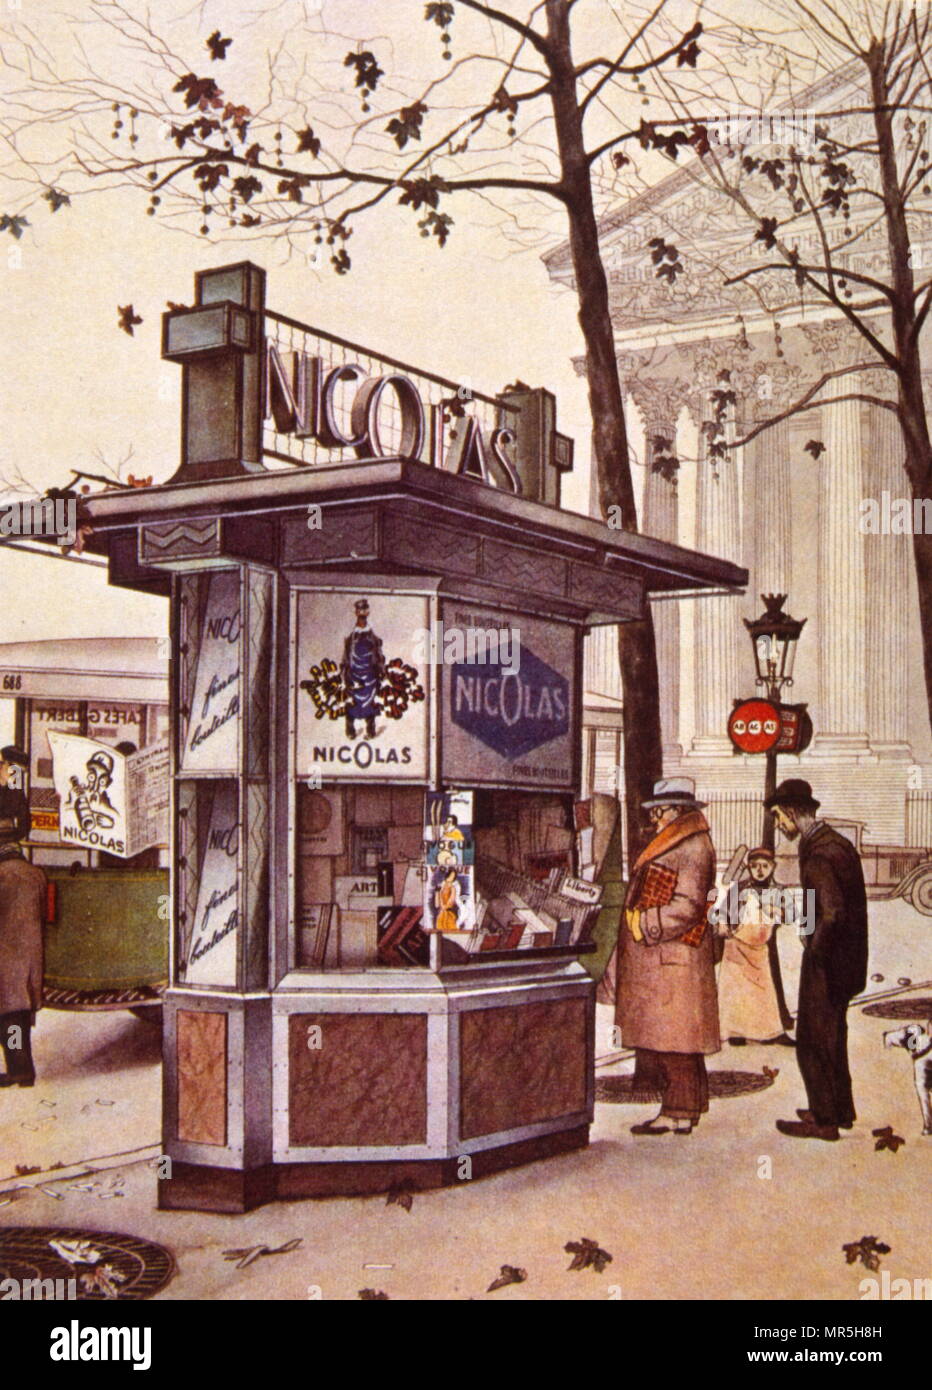 Manifesto francese raffigurante una strada shop o stand a Parigi, la vendita di vino per il mercante di vino Nicolas. 1931 Foto Stock